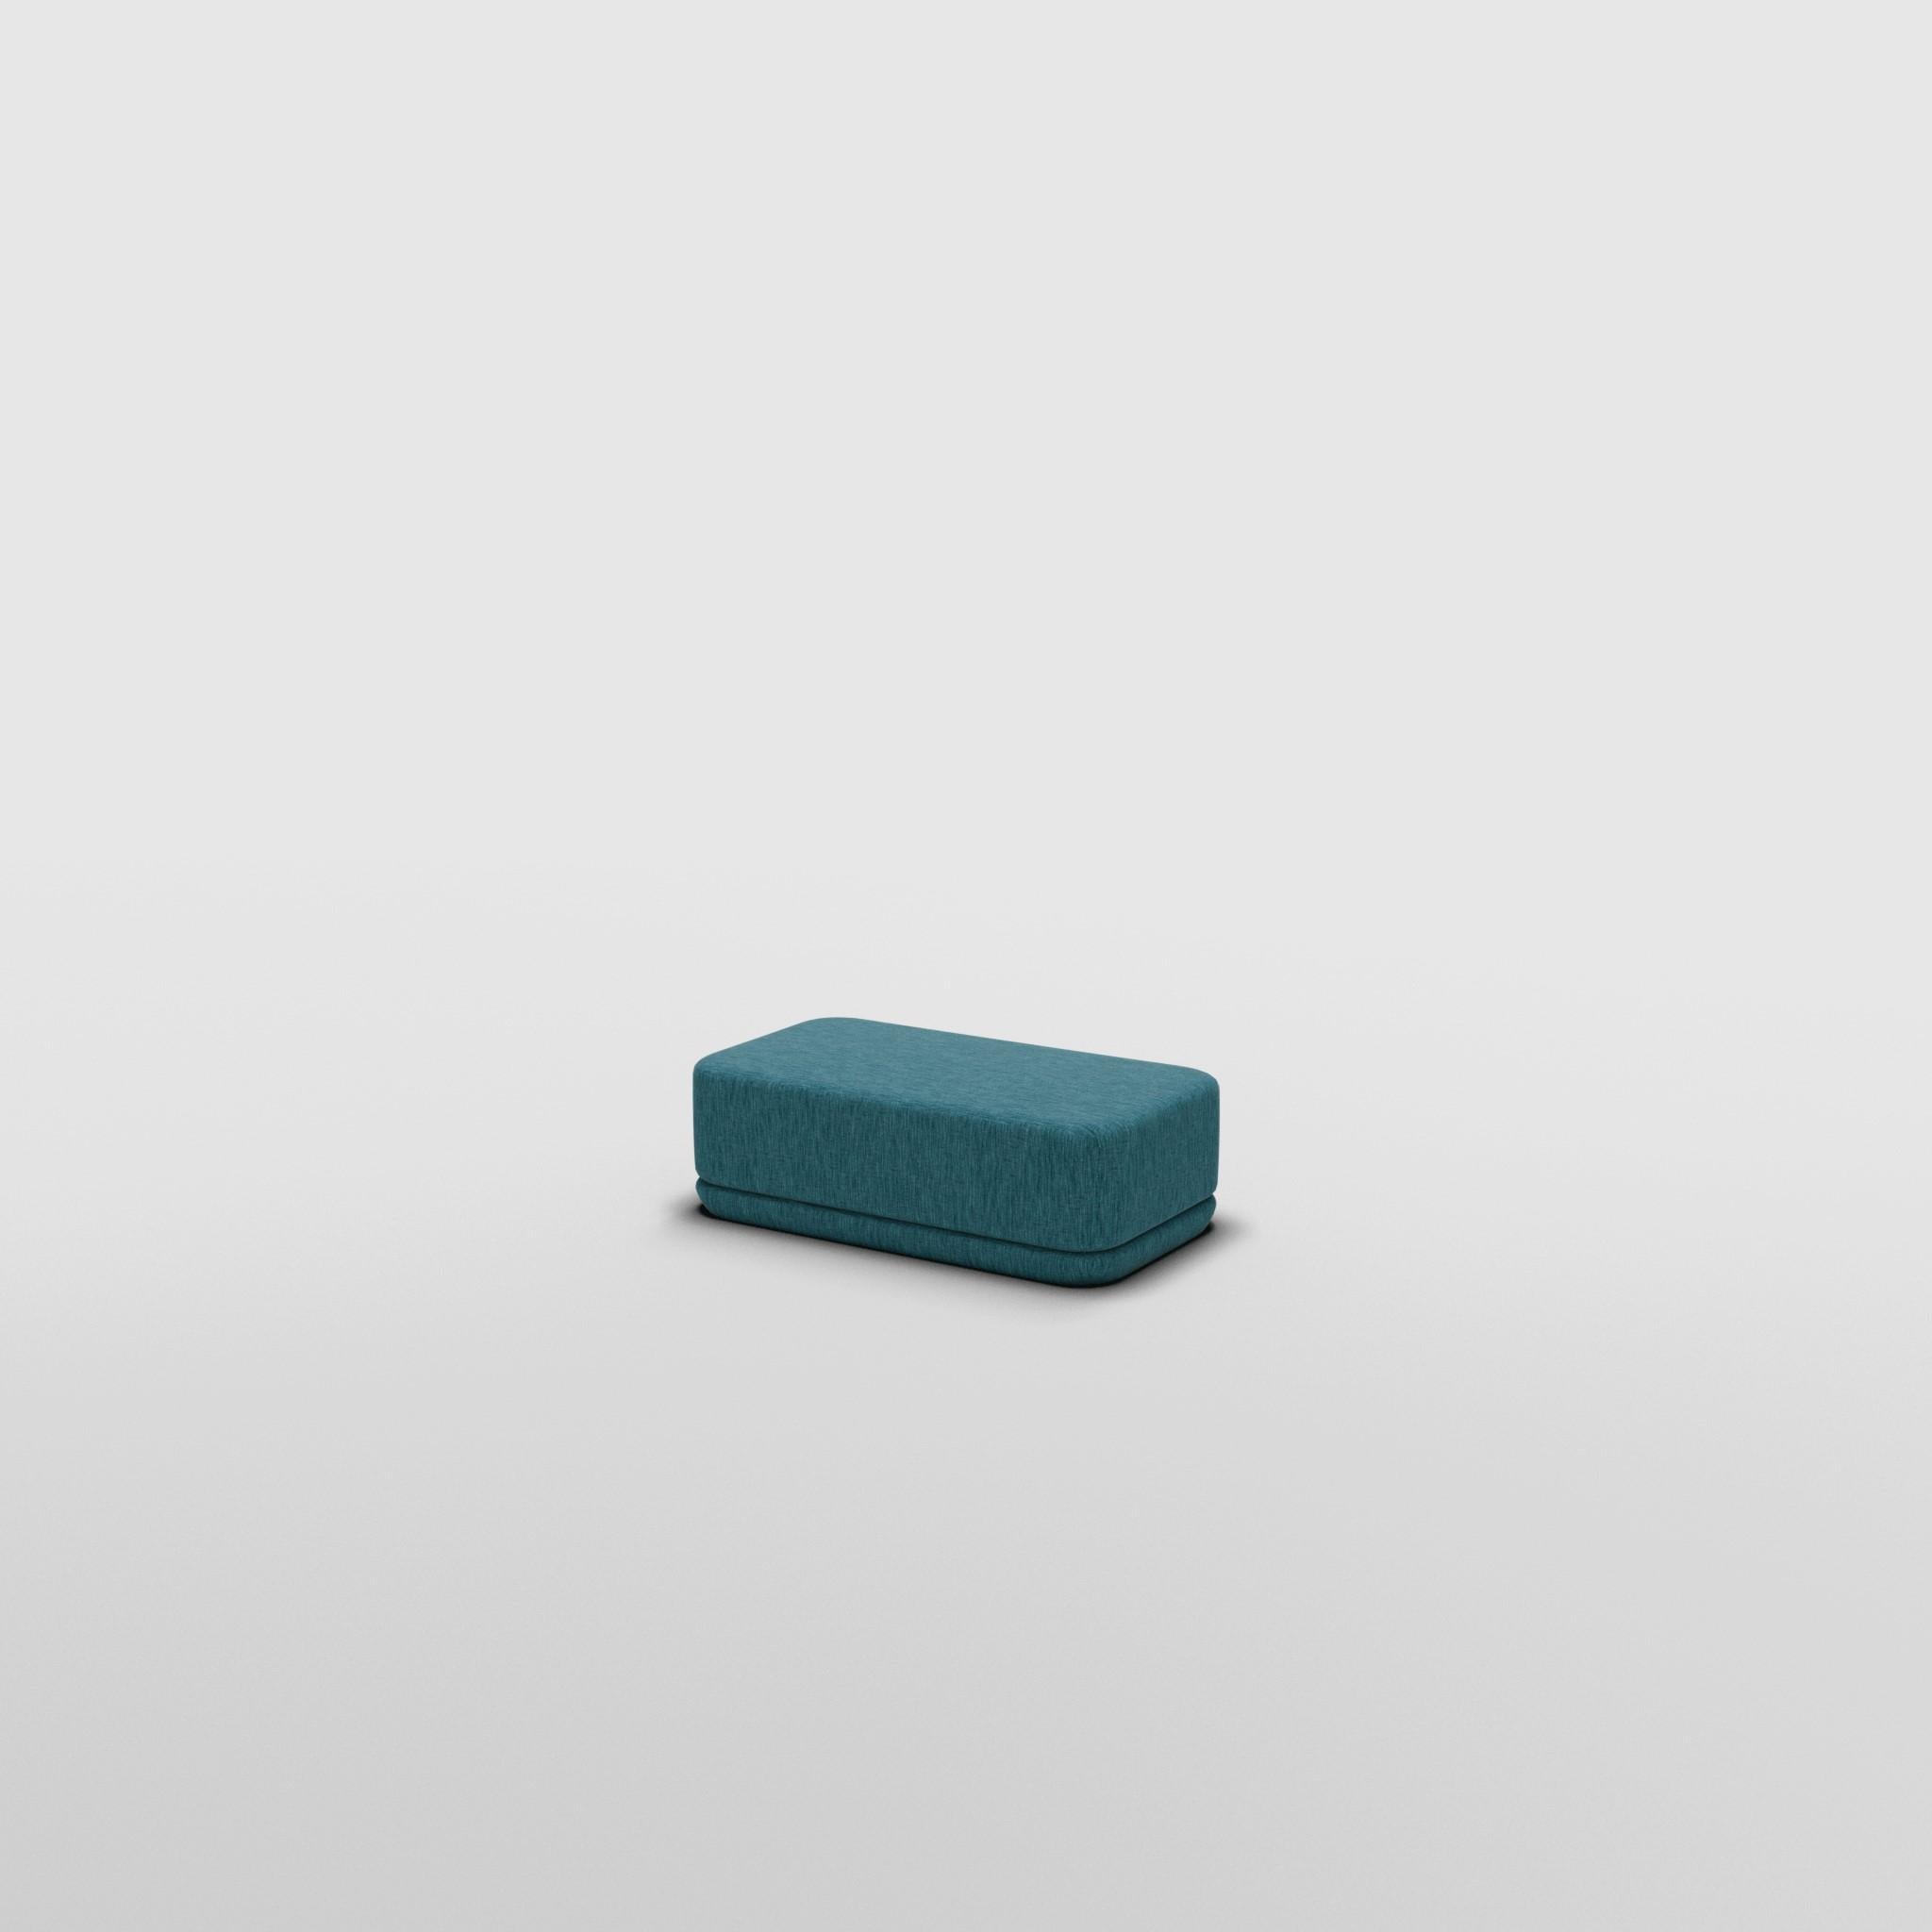 Slim Cube Ottoman - Inspiré par les meubles de luxe italiens des années 70

Découvrez le canapé Cube, où l'art rencontre l'adaptabilité. Son design sculptural et son confort personnalisable créent des possibilités infinies pour votre espace de vie.